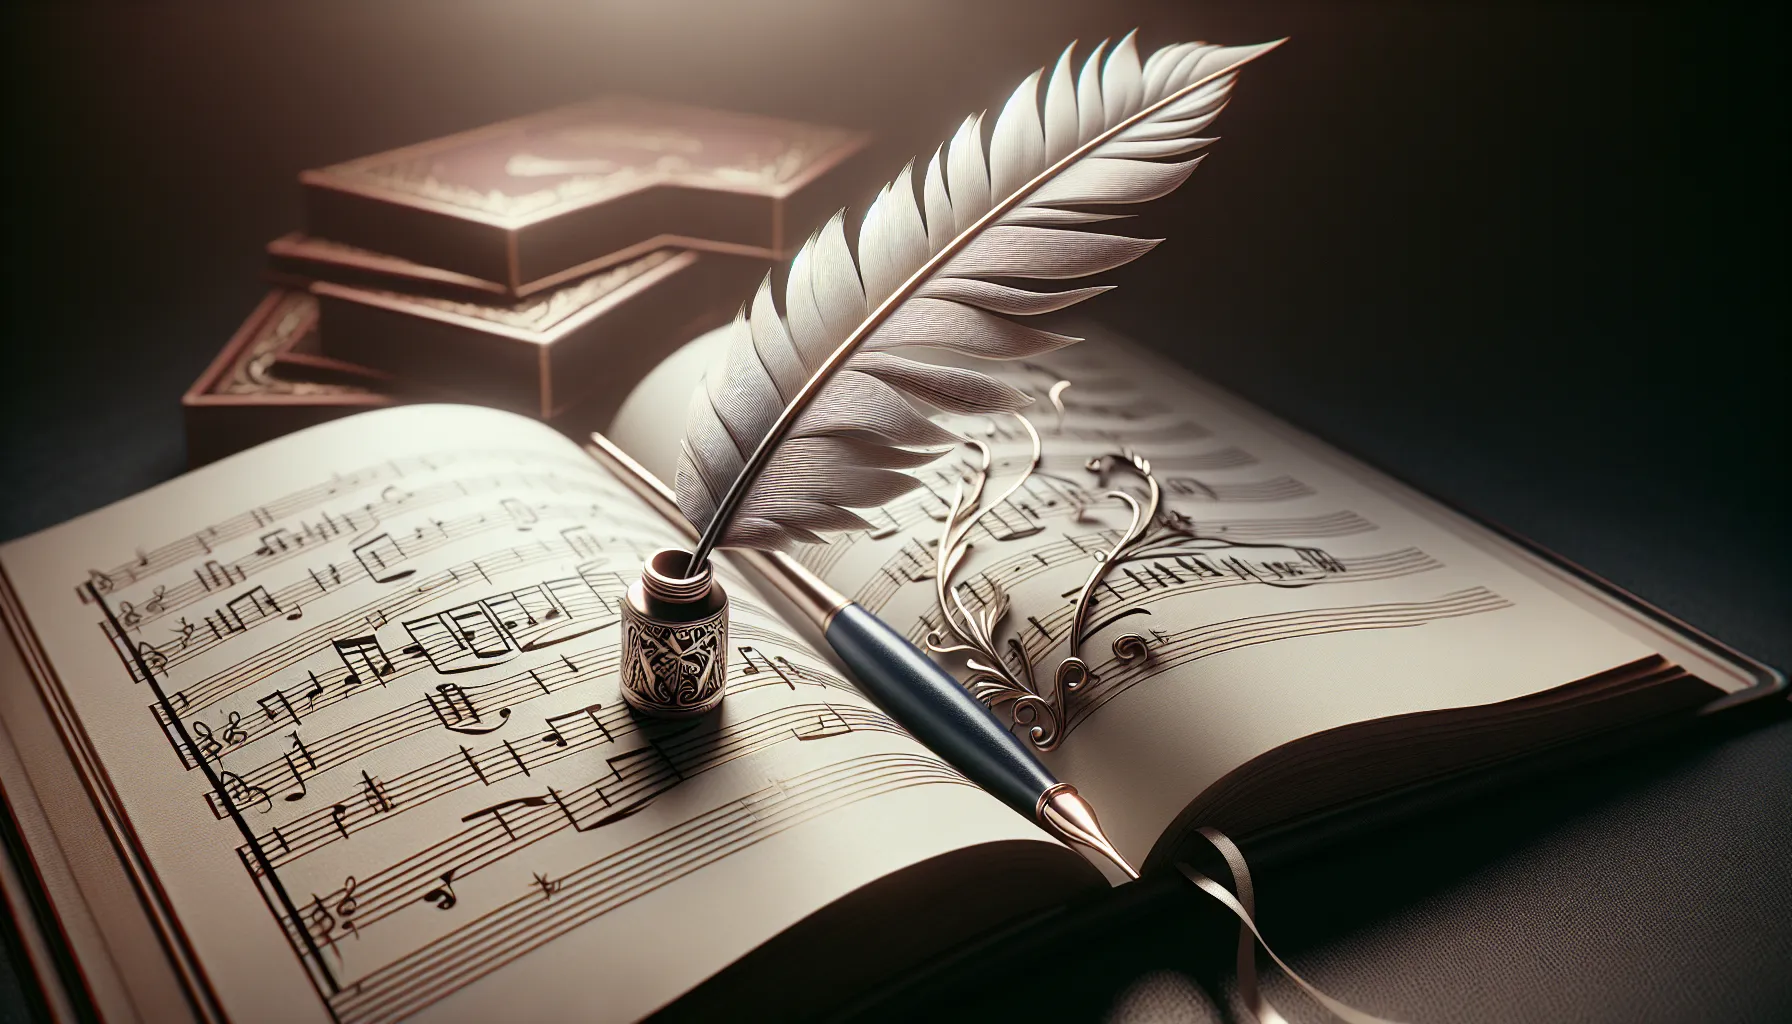 Imagen de un libro abierto con partituras y una pluma